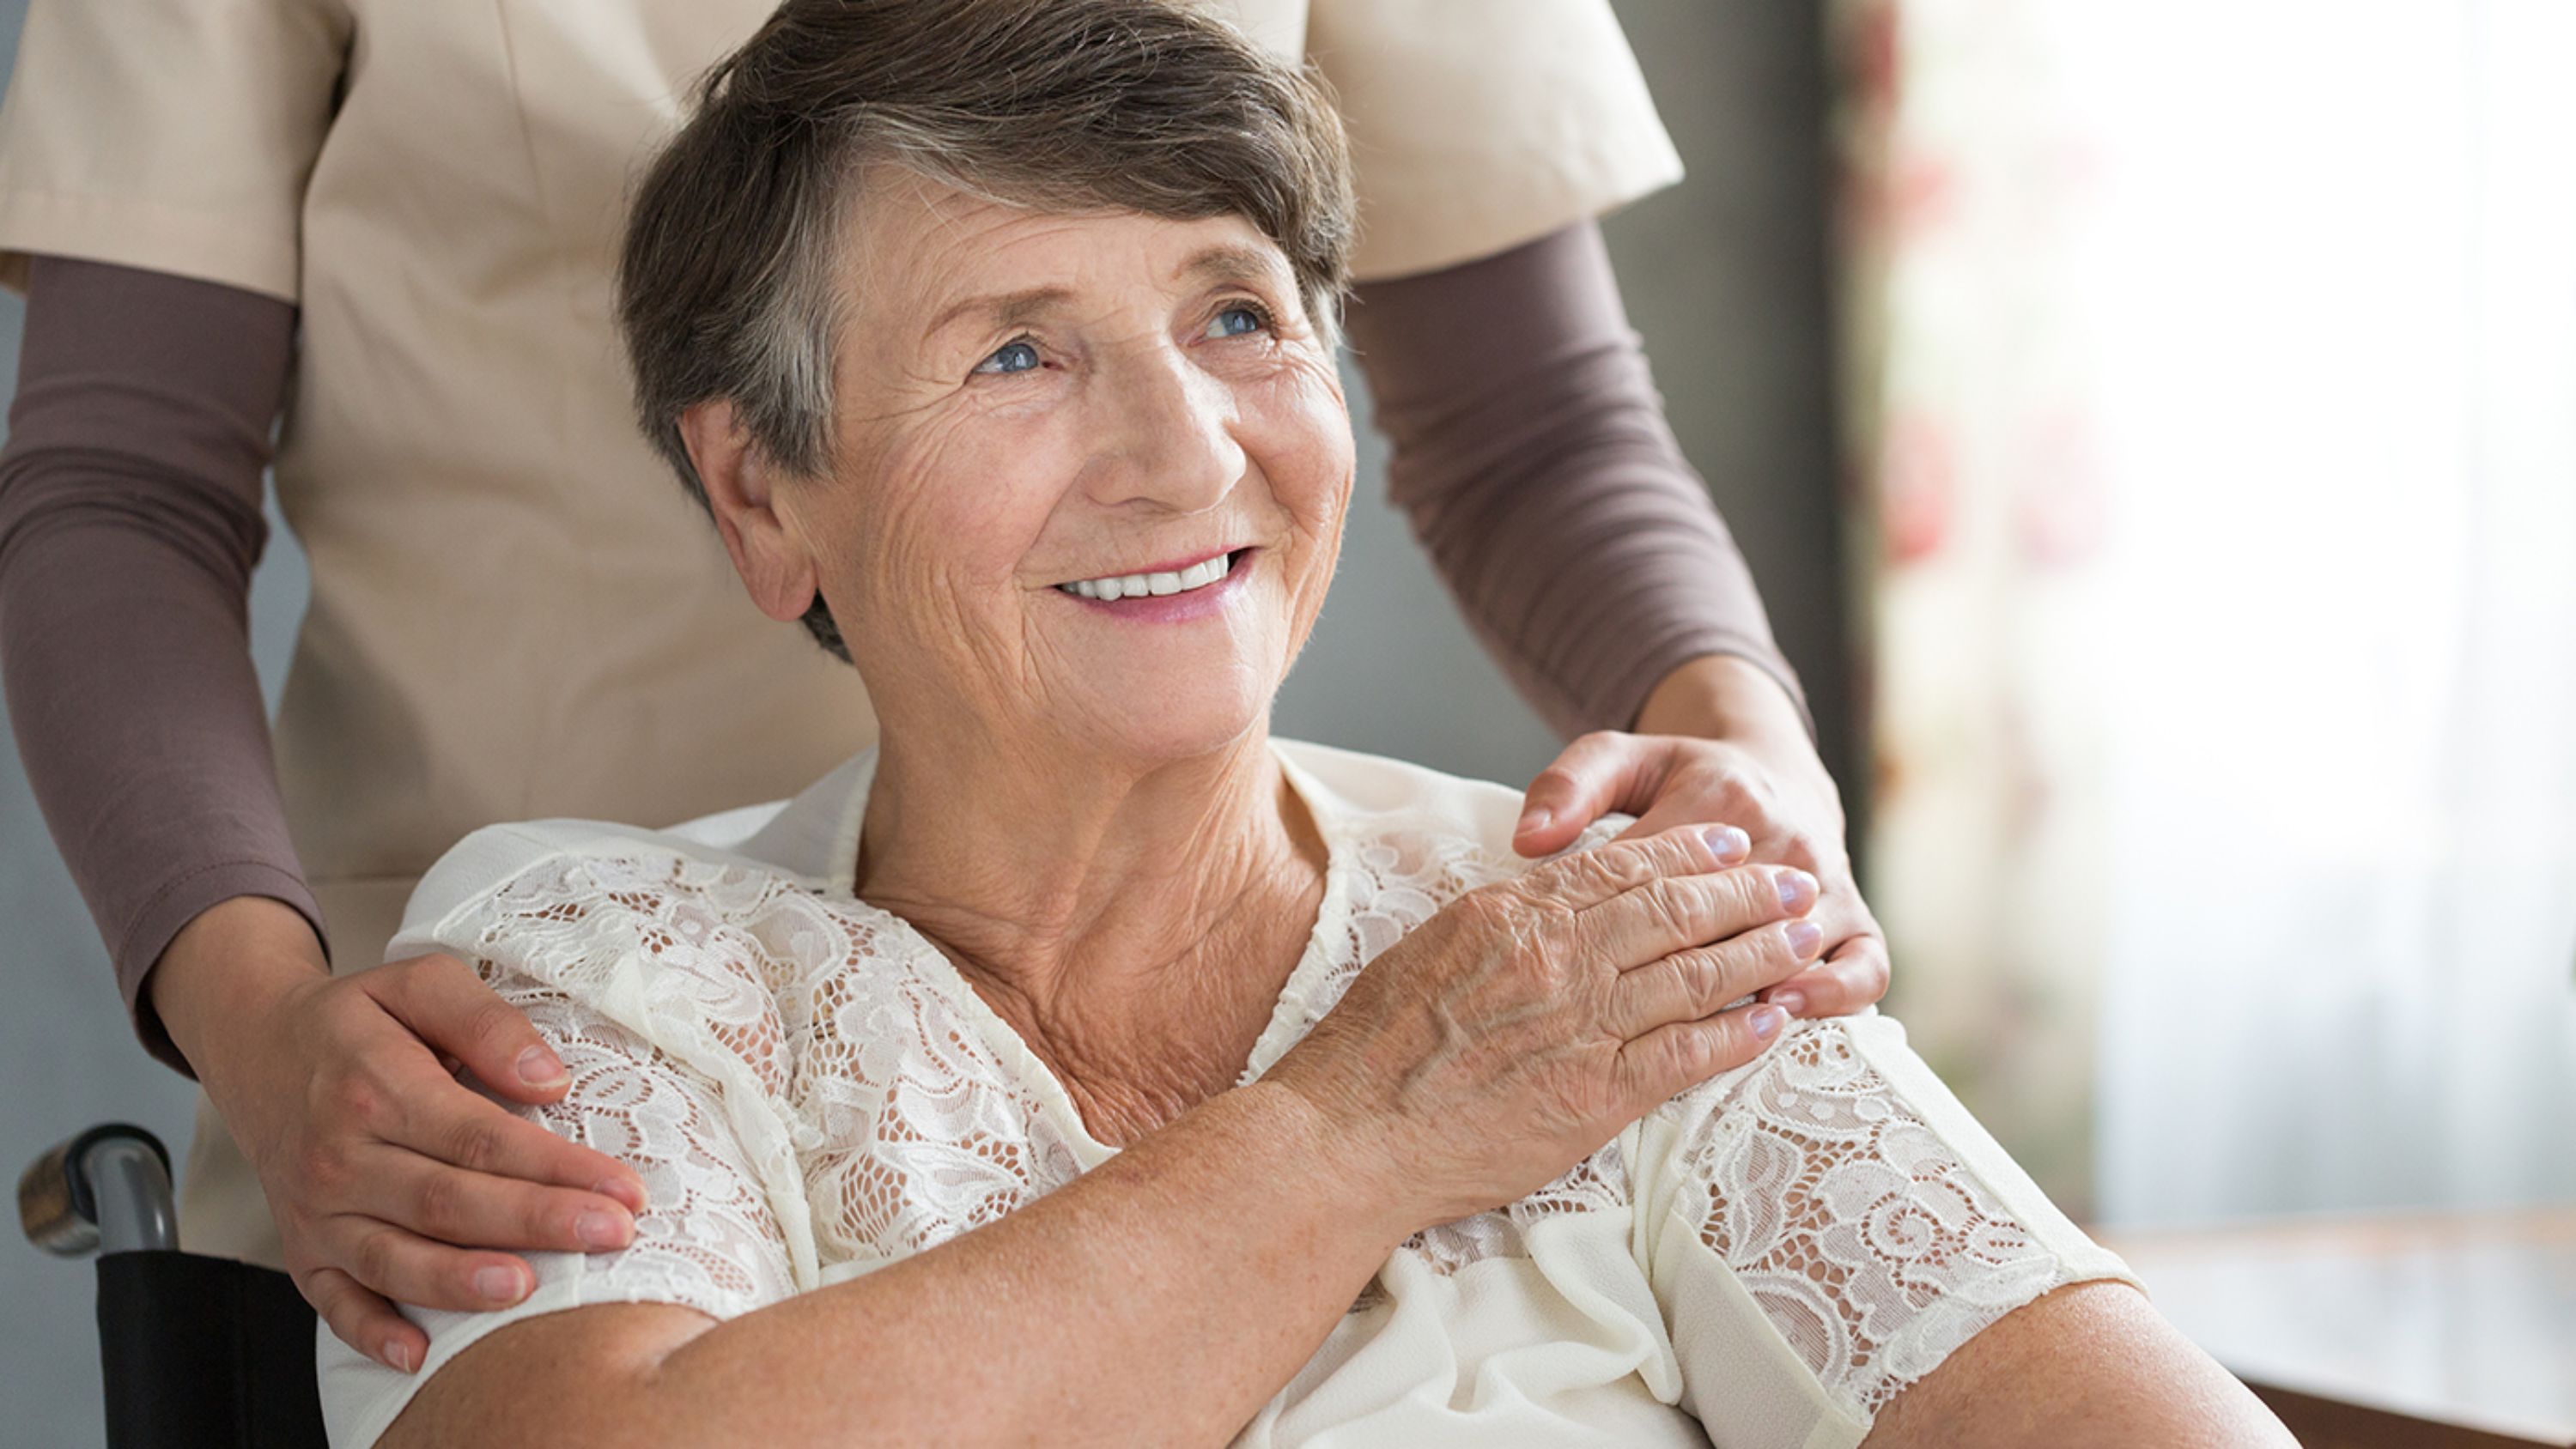 Une femme âgée atteinte d’une maladie incurable prend en main les questions relatives à sa fin de vie sans angoisse ni douleur grâce aux soins palliatifs.